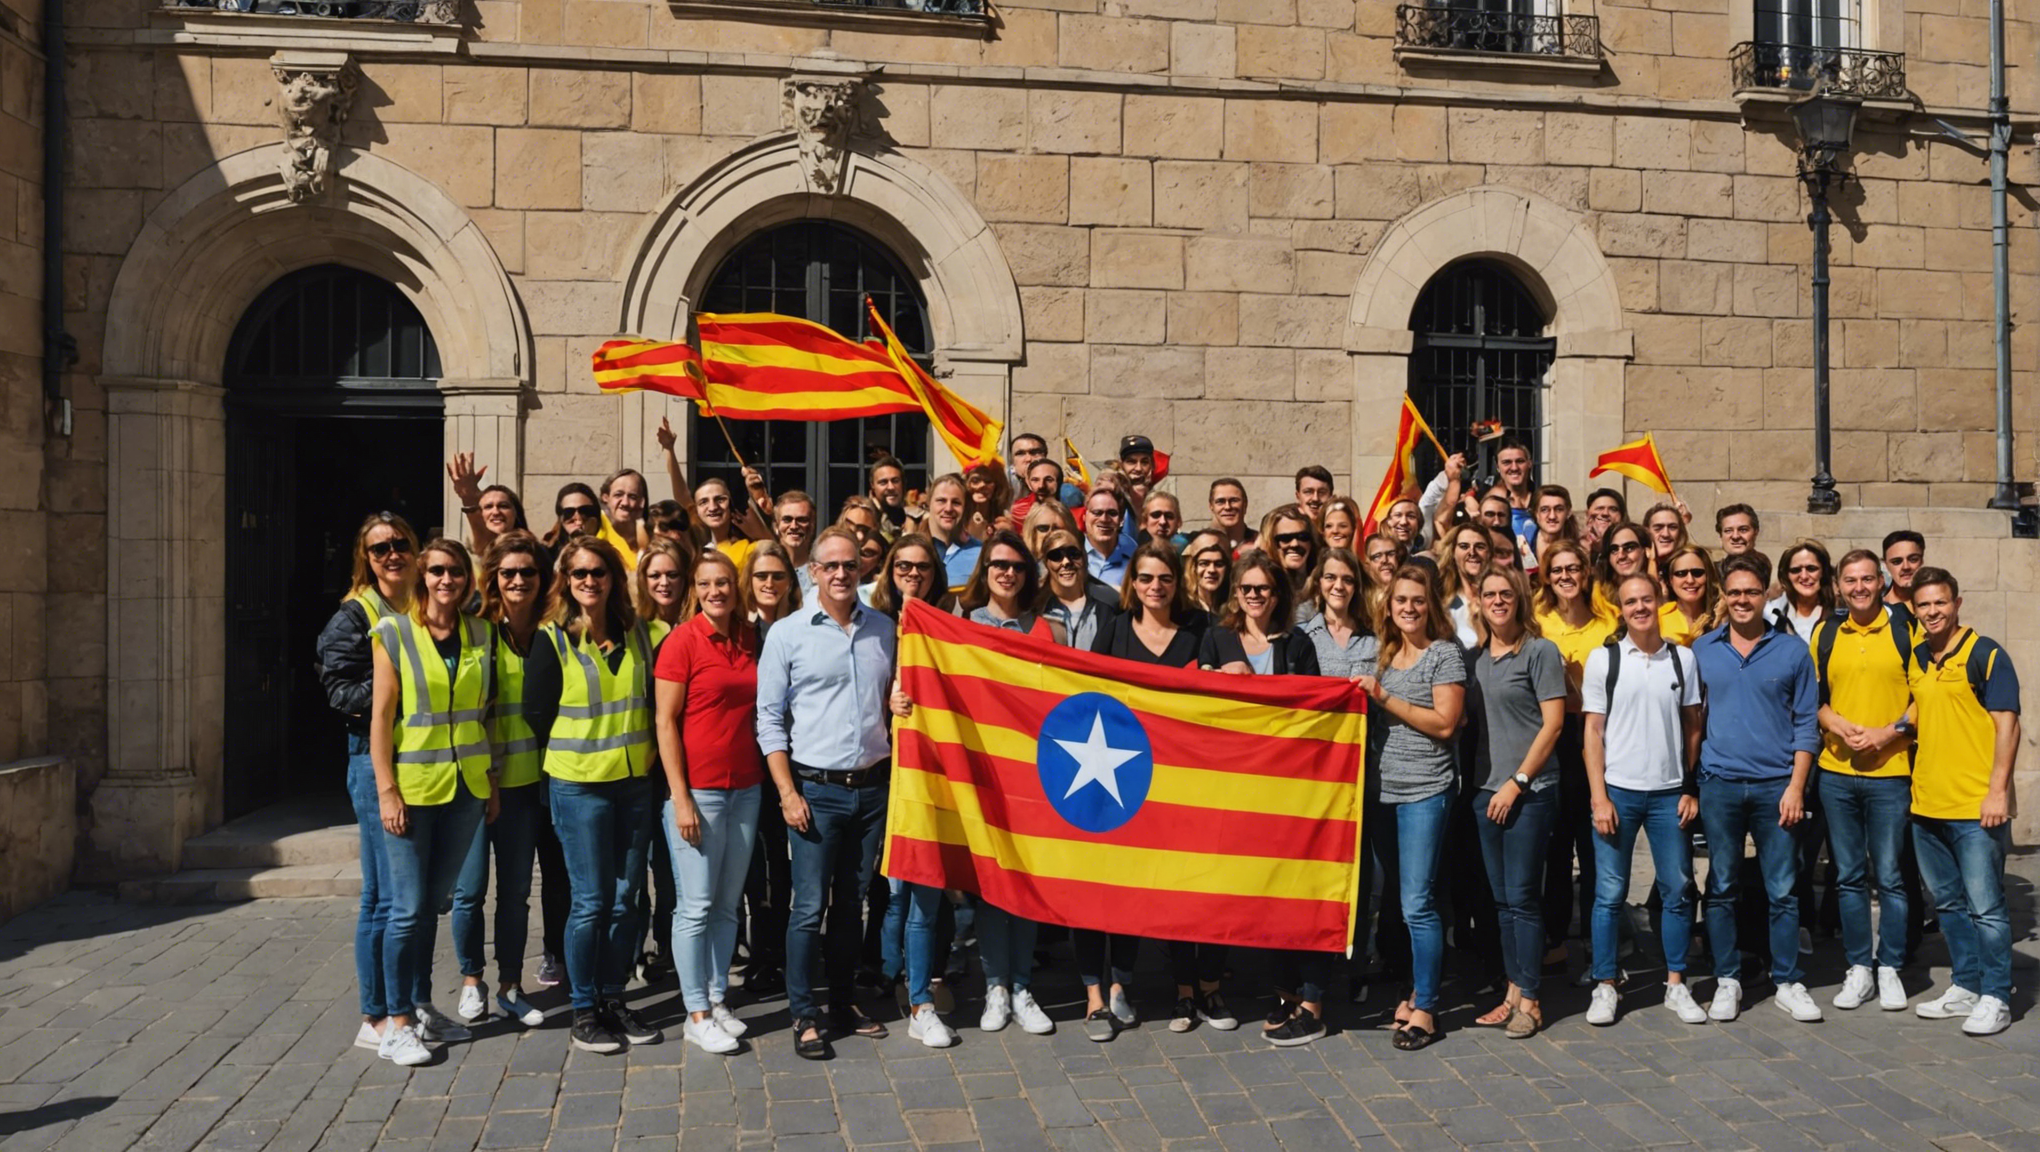 découvrez comment atteindre le niveau c de catalan en étant autonome grâce à des conseils pratiques et des ressources adaptées.